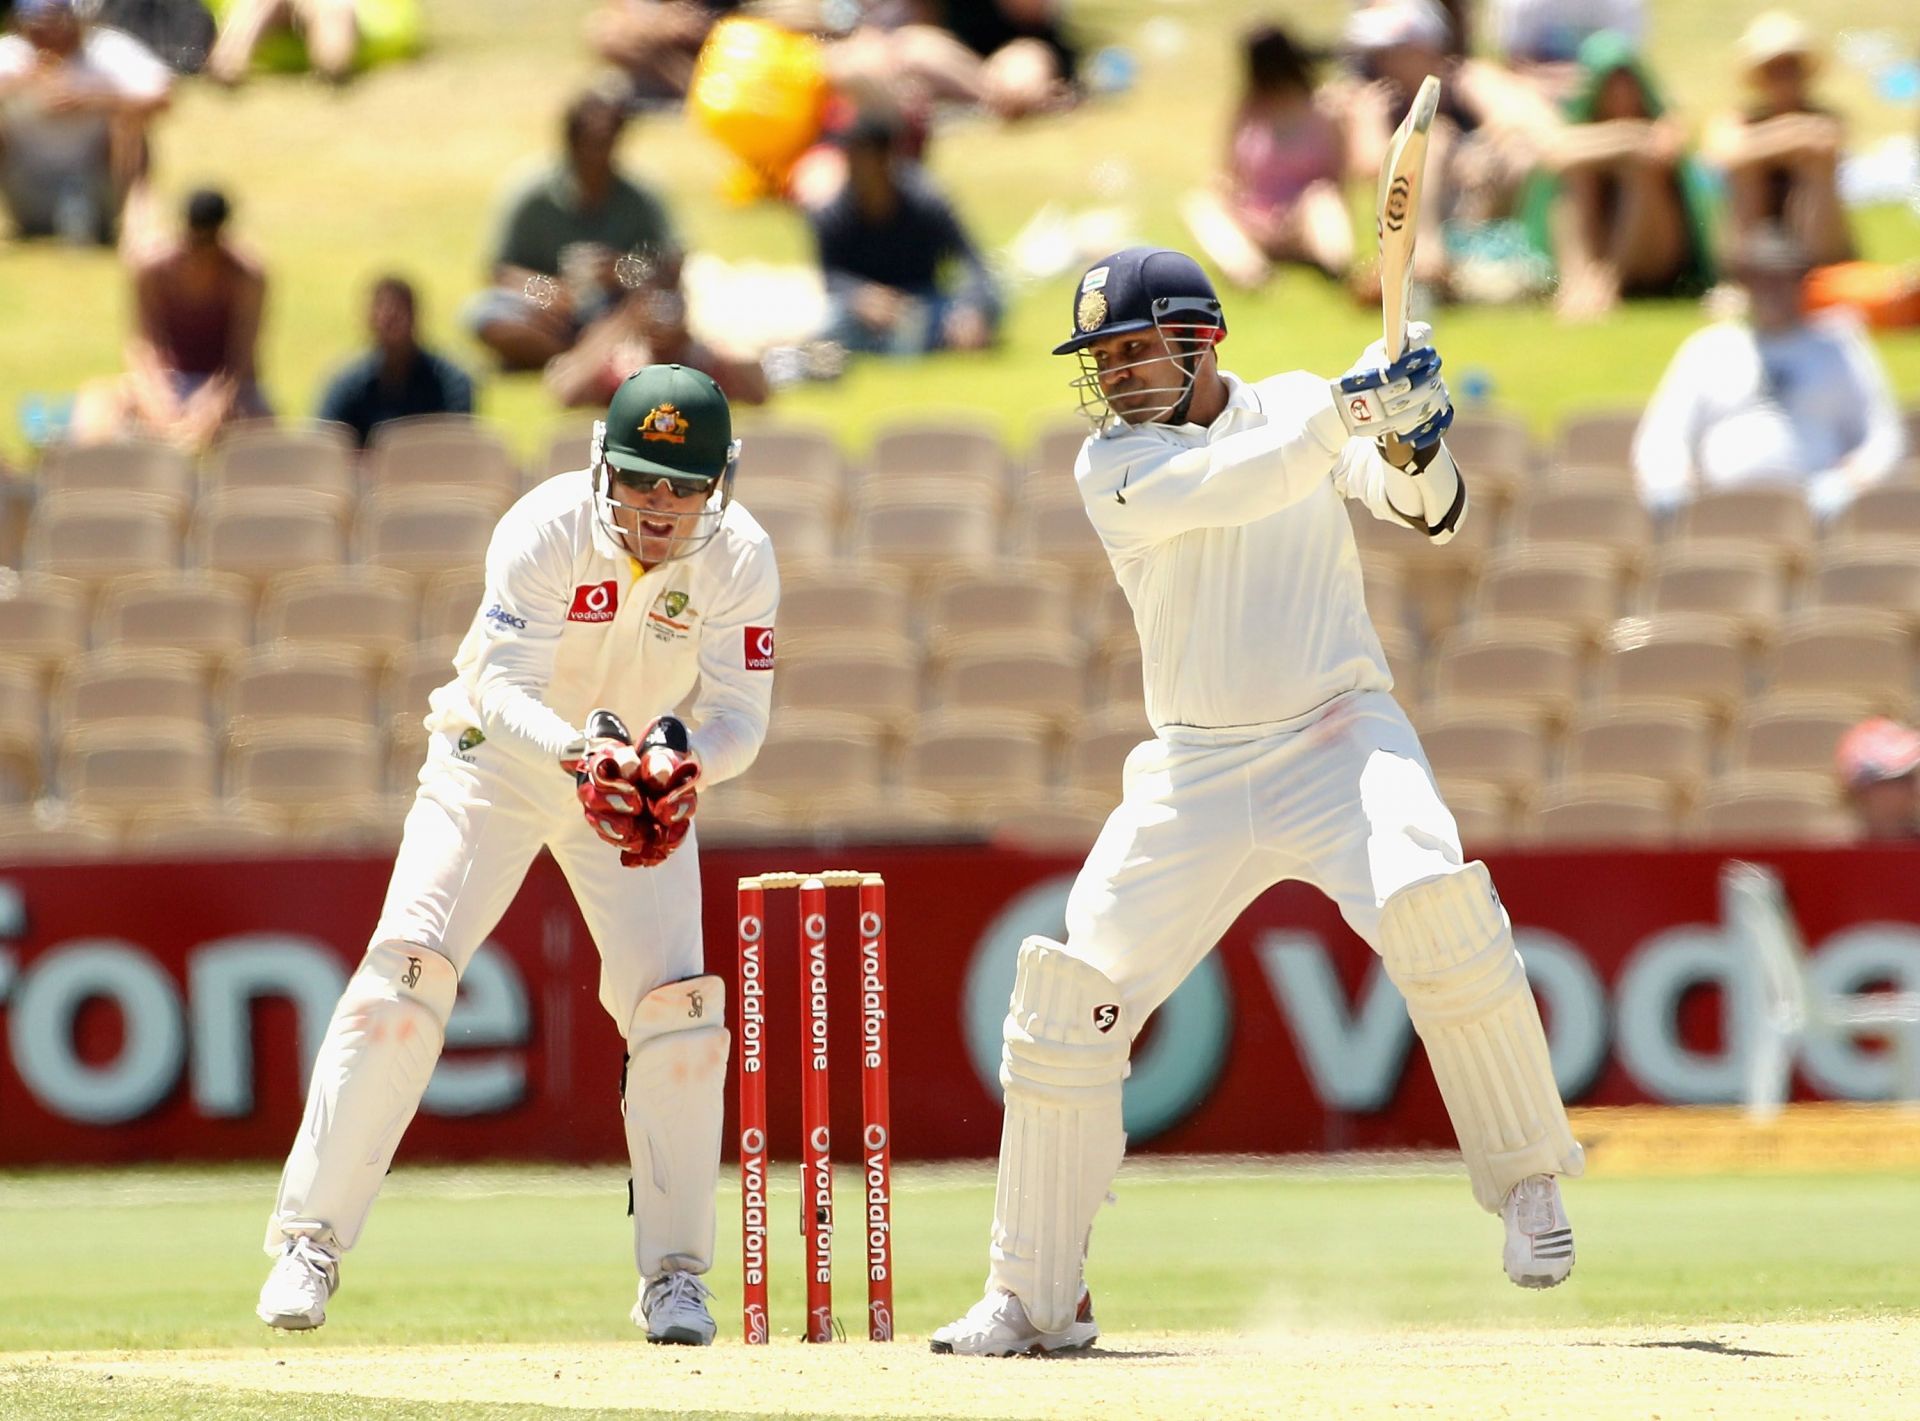 Virender Sehwag scored 293 against Sri Lanka